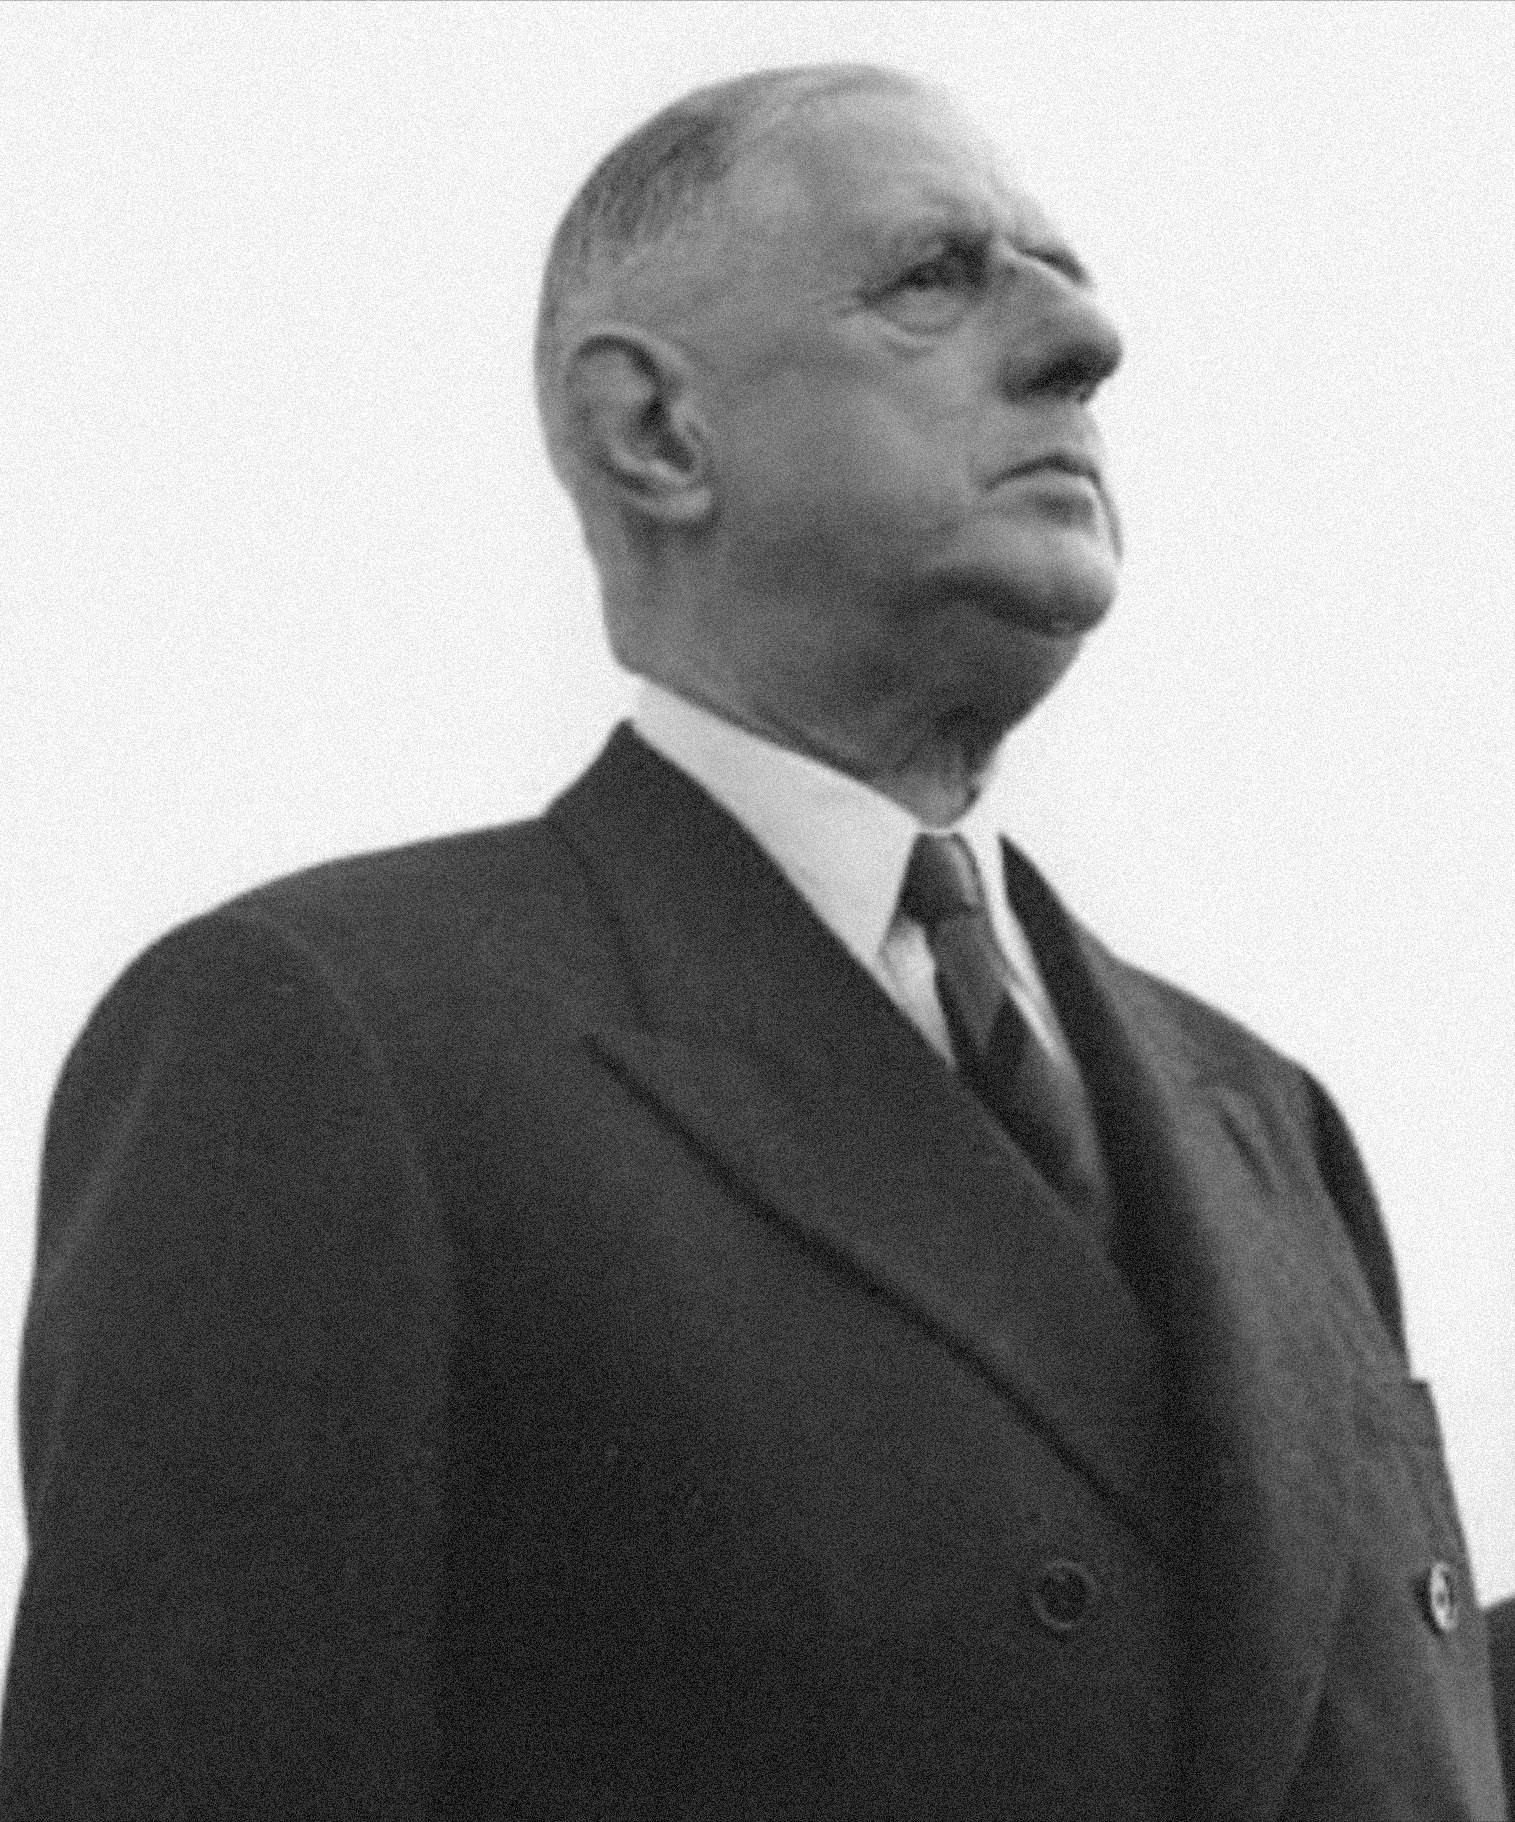 auteur Charles de Gaulle de la citation Le leader doit viser haut, voir grand, juger largement, ainsi se distinguer des gens ordinaires qui débattent dans des limites étroites.